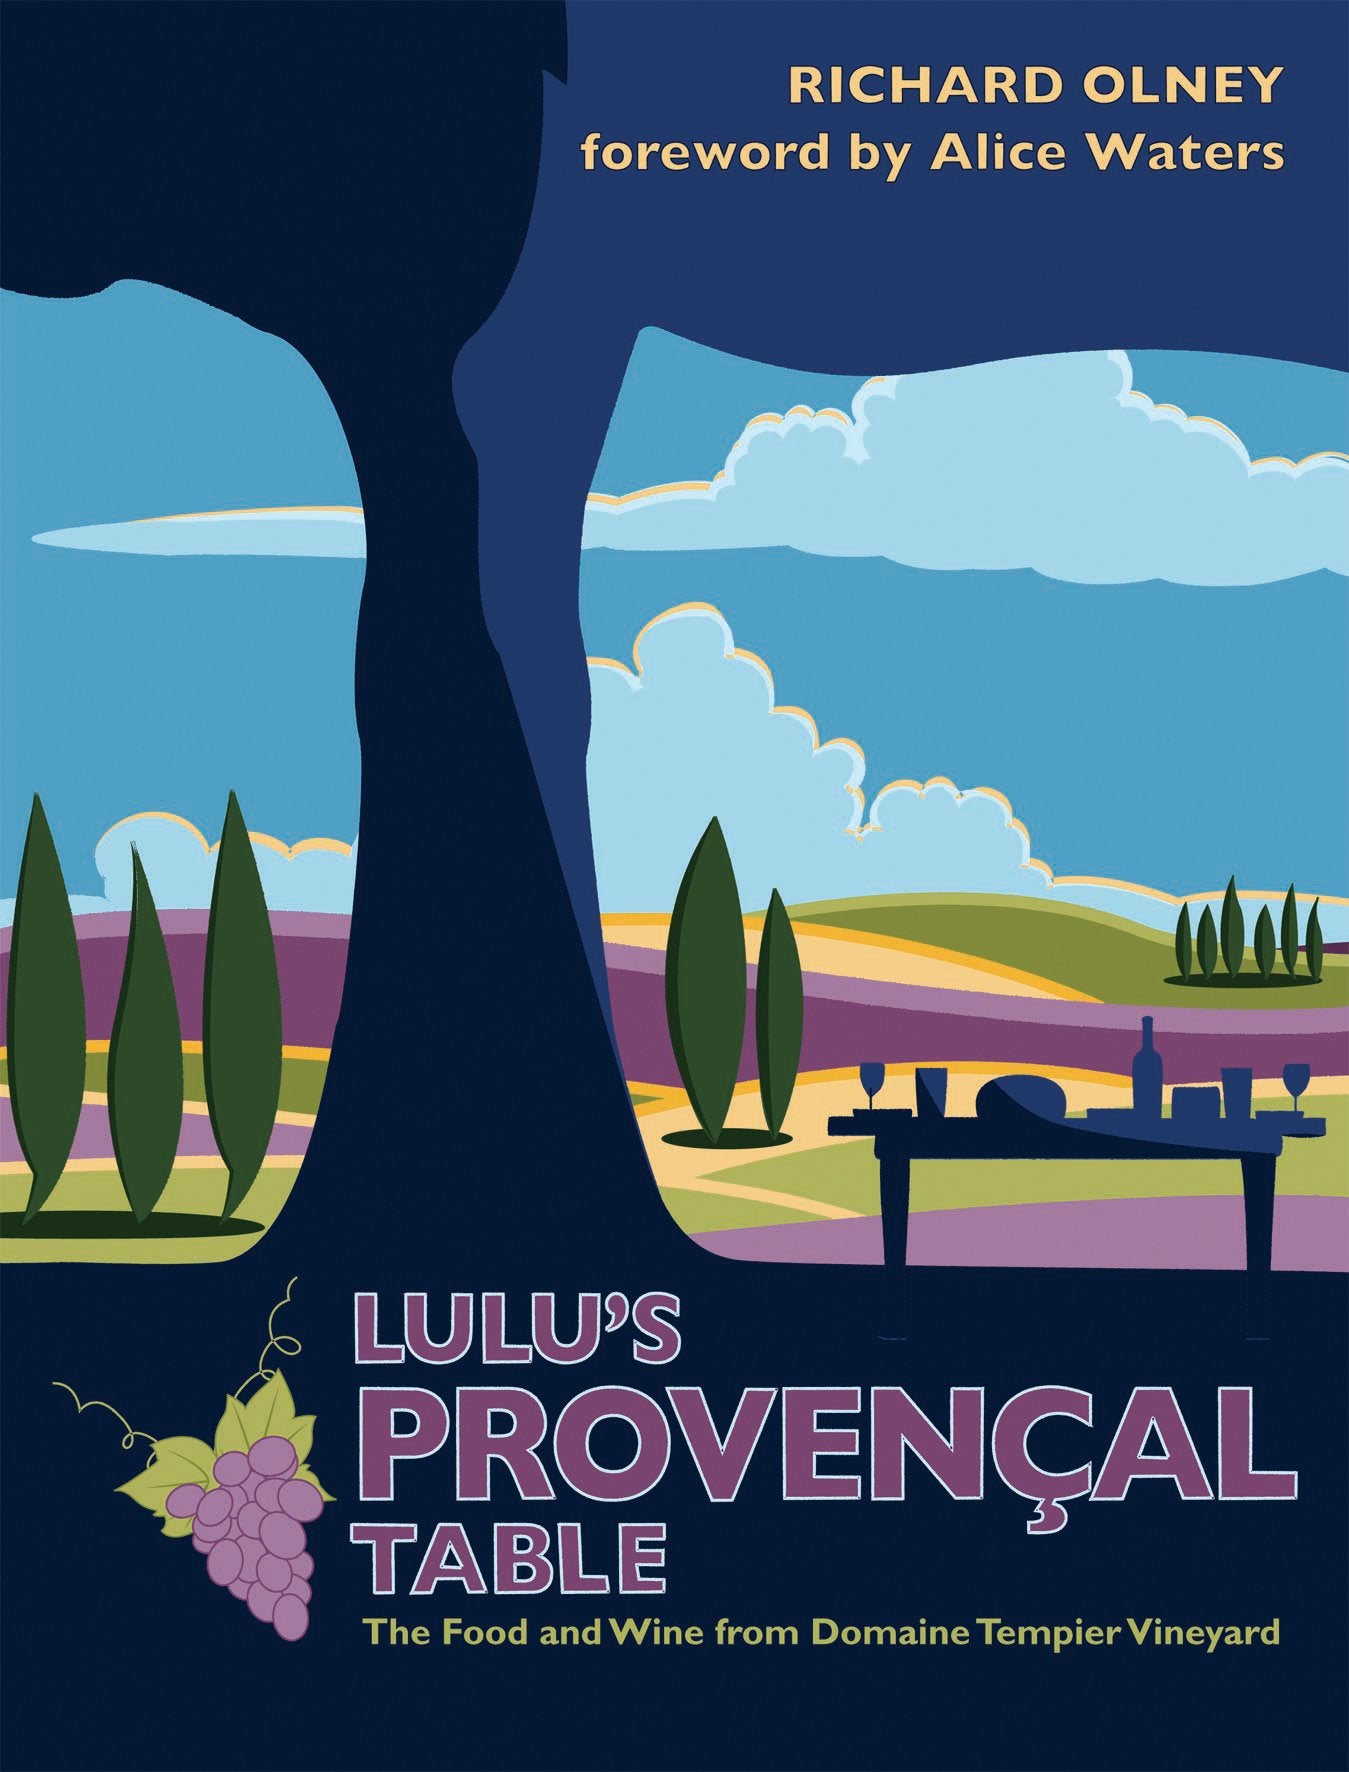 Lulu's Provençal Table (Richard Olney)